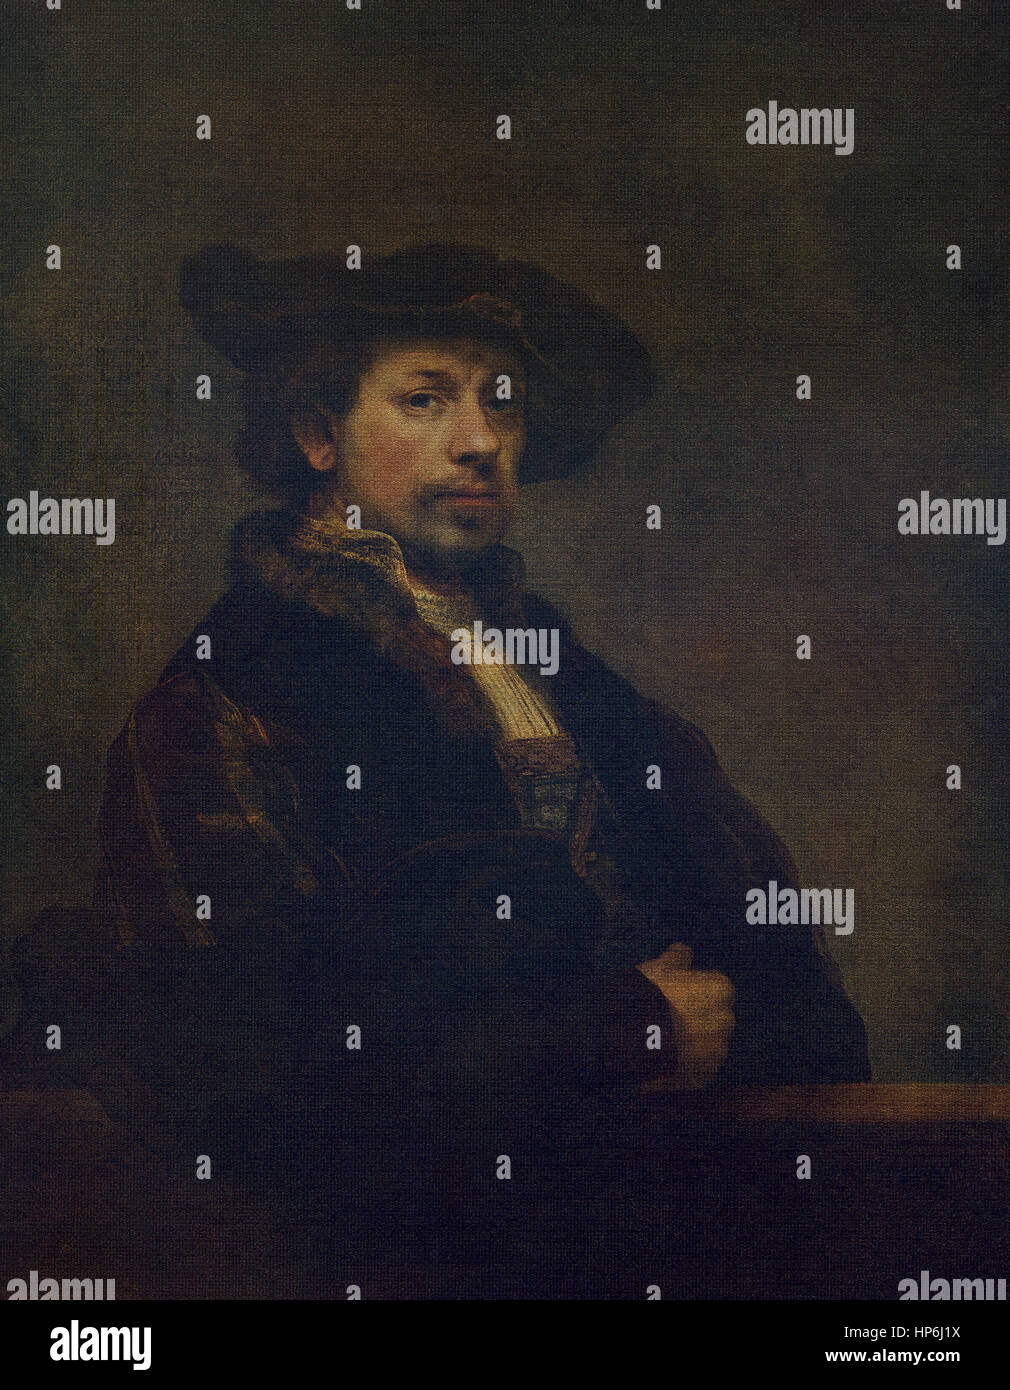 Dieses Selbstporträt des niederländischen Künstlers Rembrandt (1606-1669) wurde im Jahre 1640 gemalt. Es zeigt die Arrtist Griff des Charakters und seiner macht die Persönlichkeit seines Faches vorzuschlagen. Rembrandt ist unter den sechs großen Meistern der Welt gezählt. Stockfoto